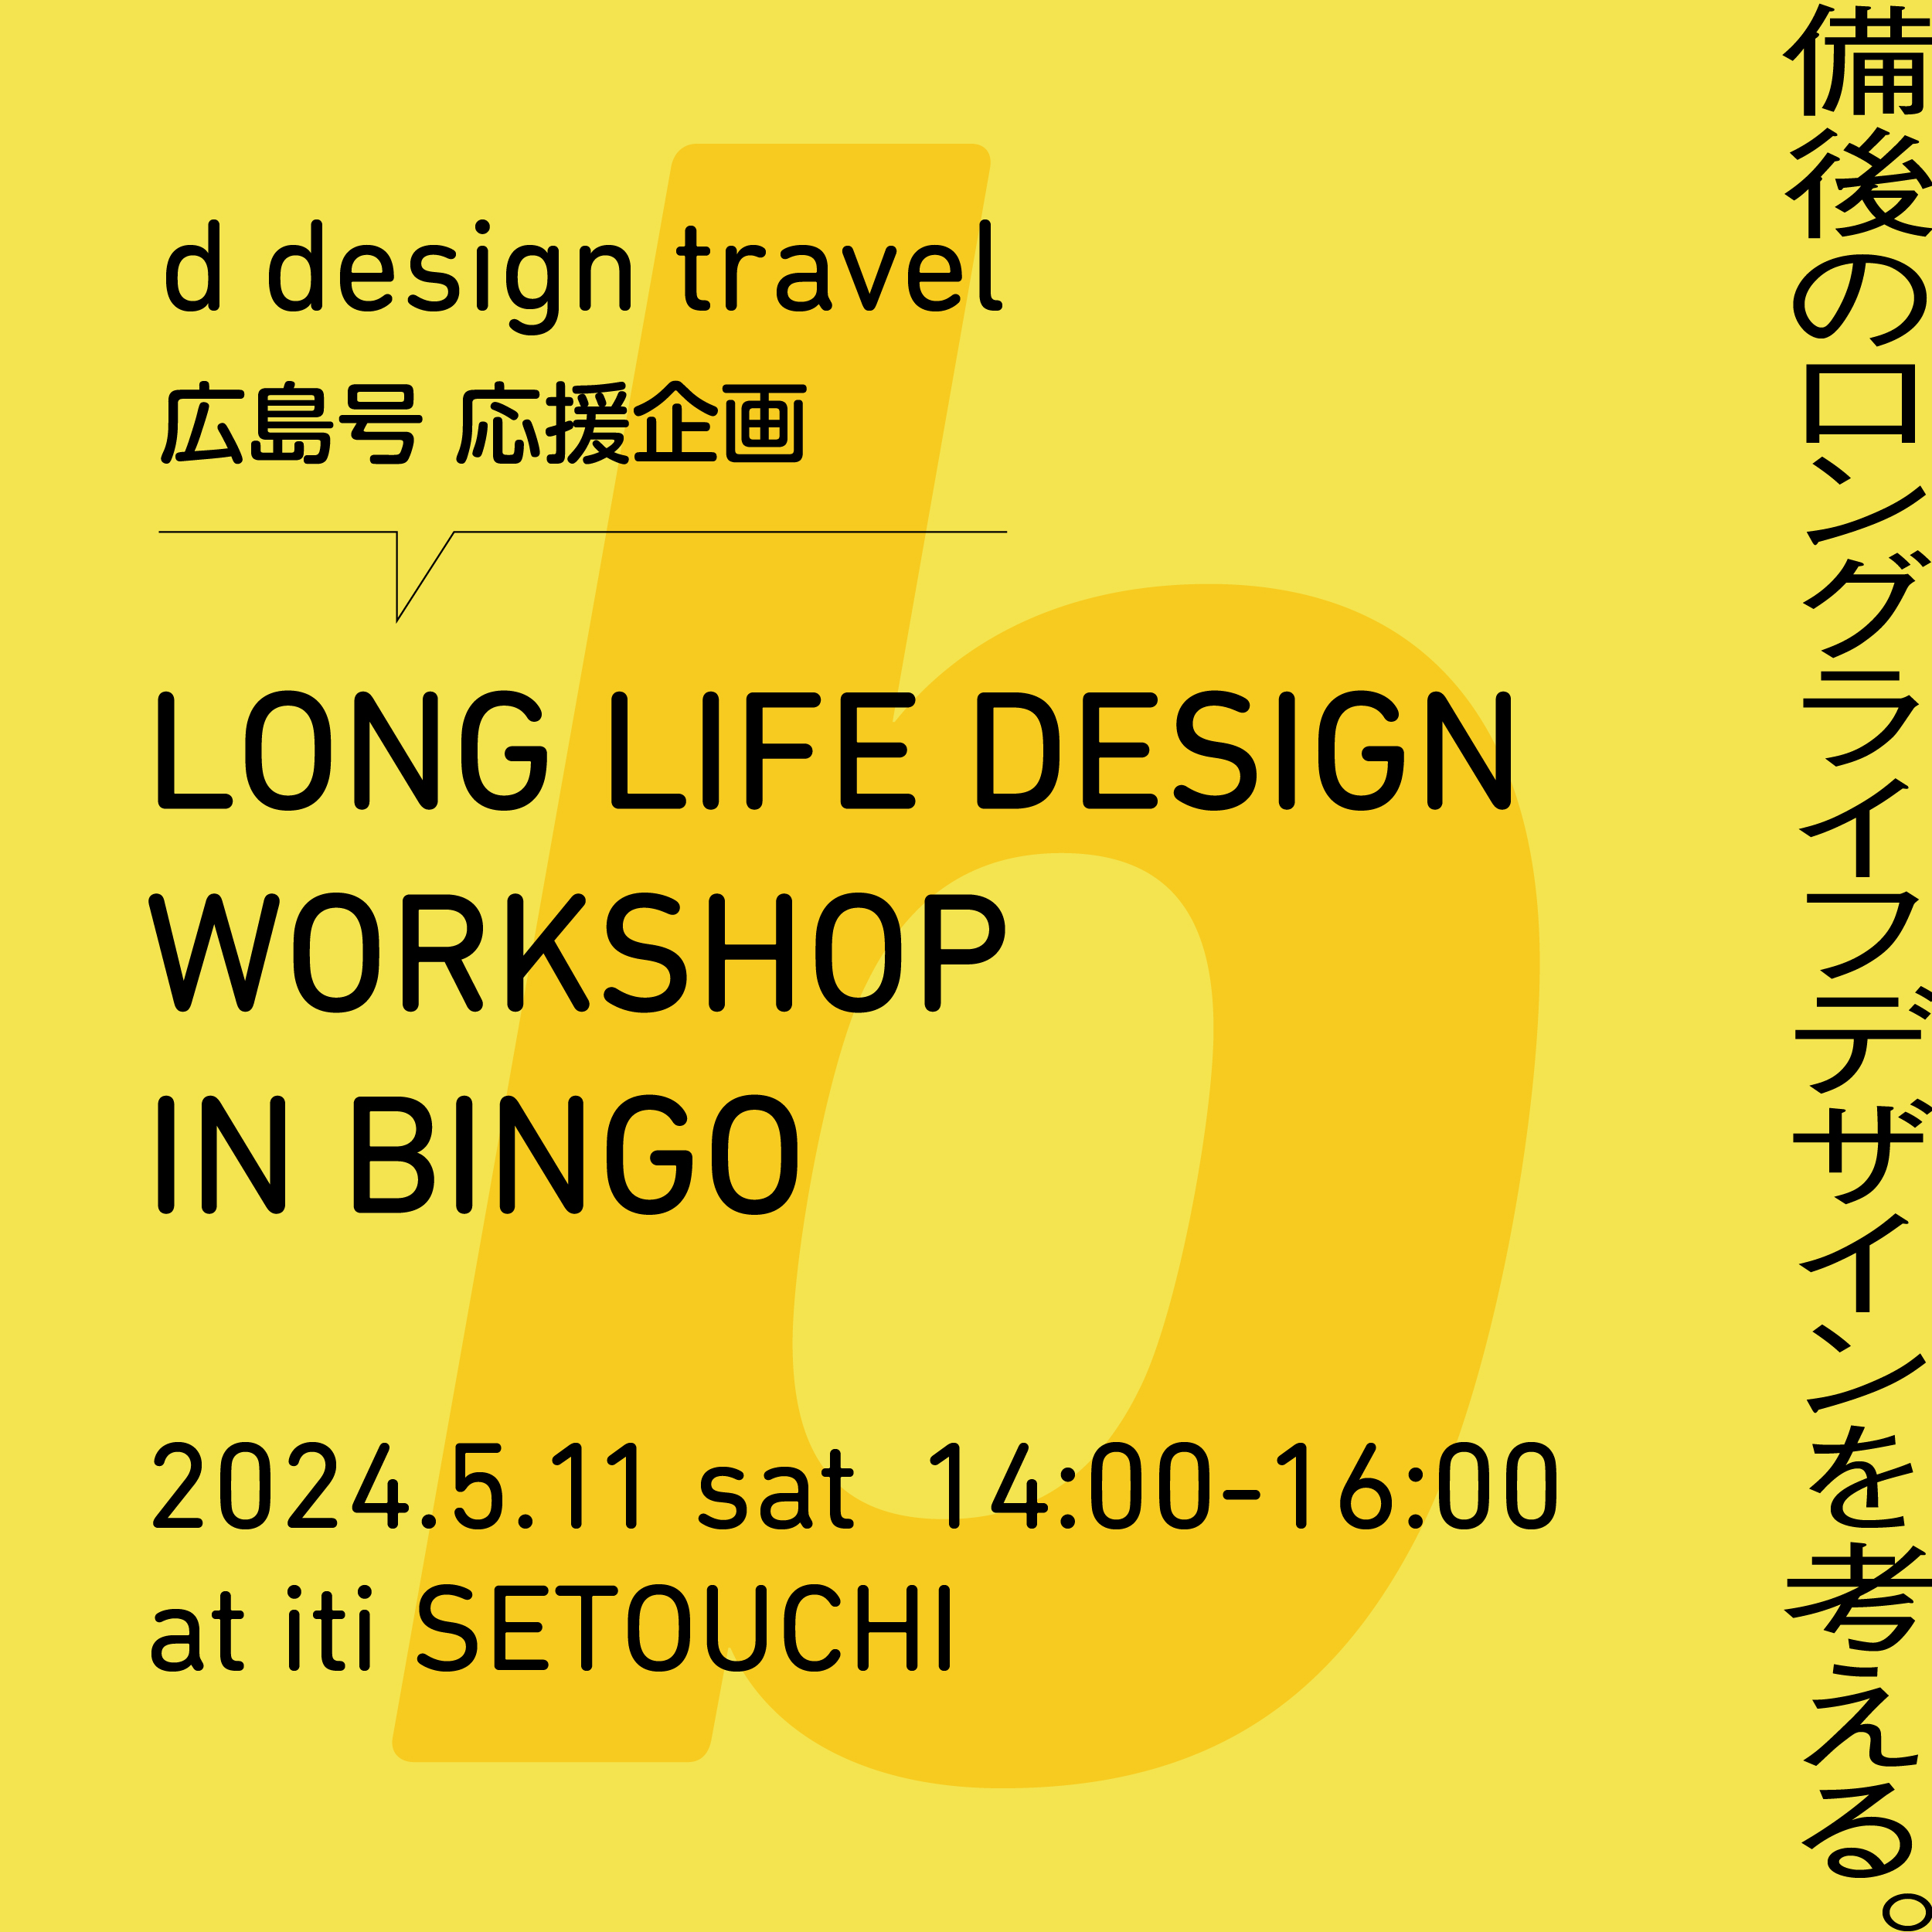 5月11日（sat）d design travel 広島号応援企画LONG LIFE DESIGN WORKSHOP IN BINGO